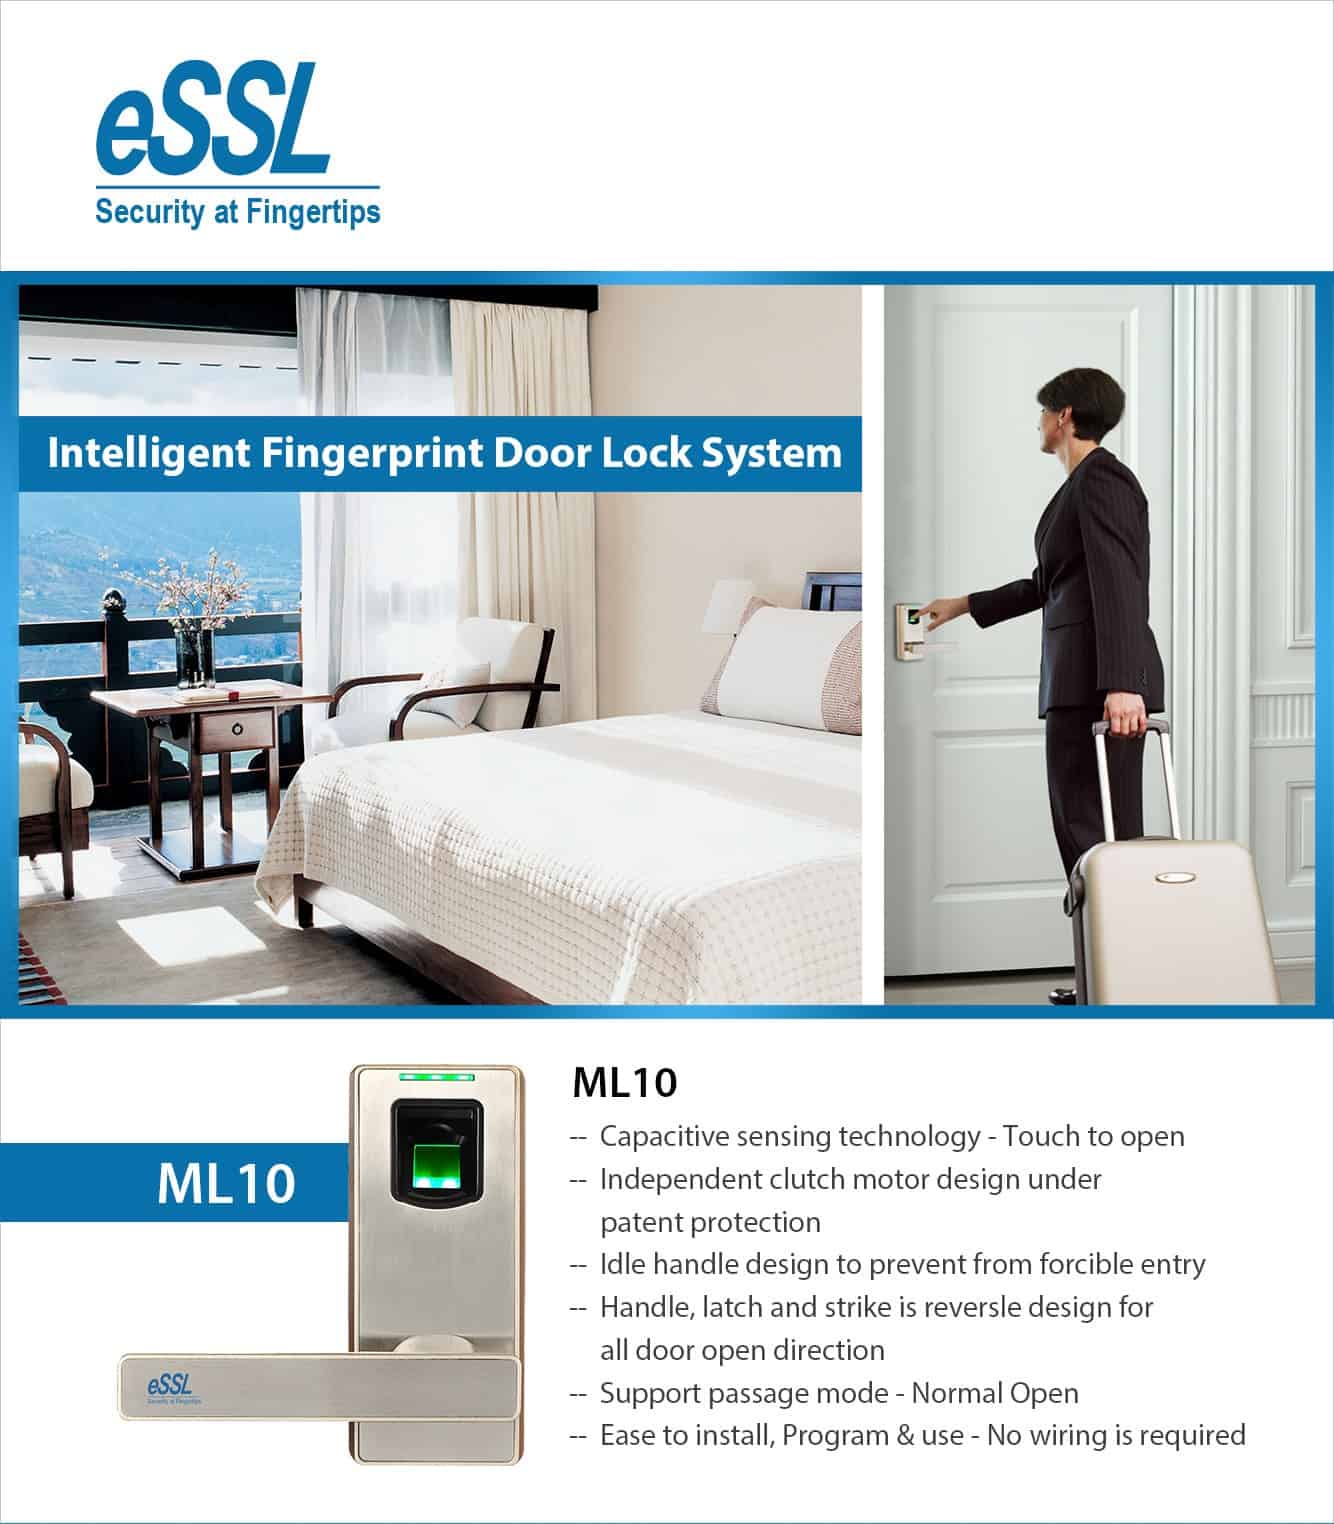 essl fingerprint door lock ML10